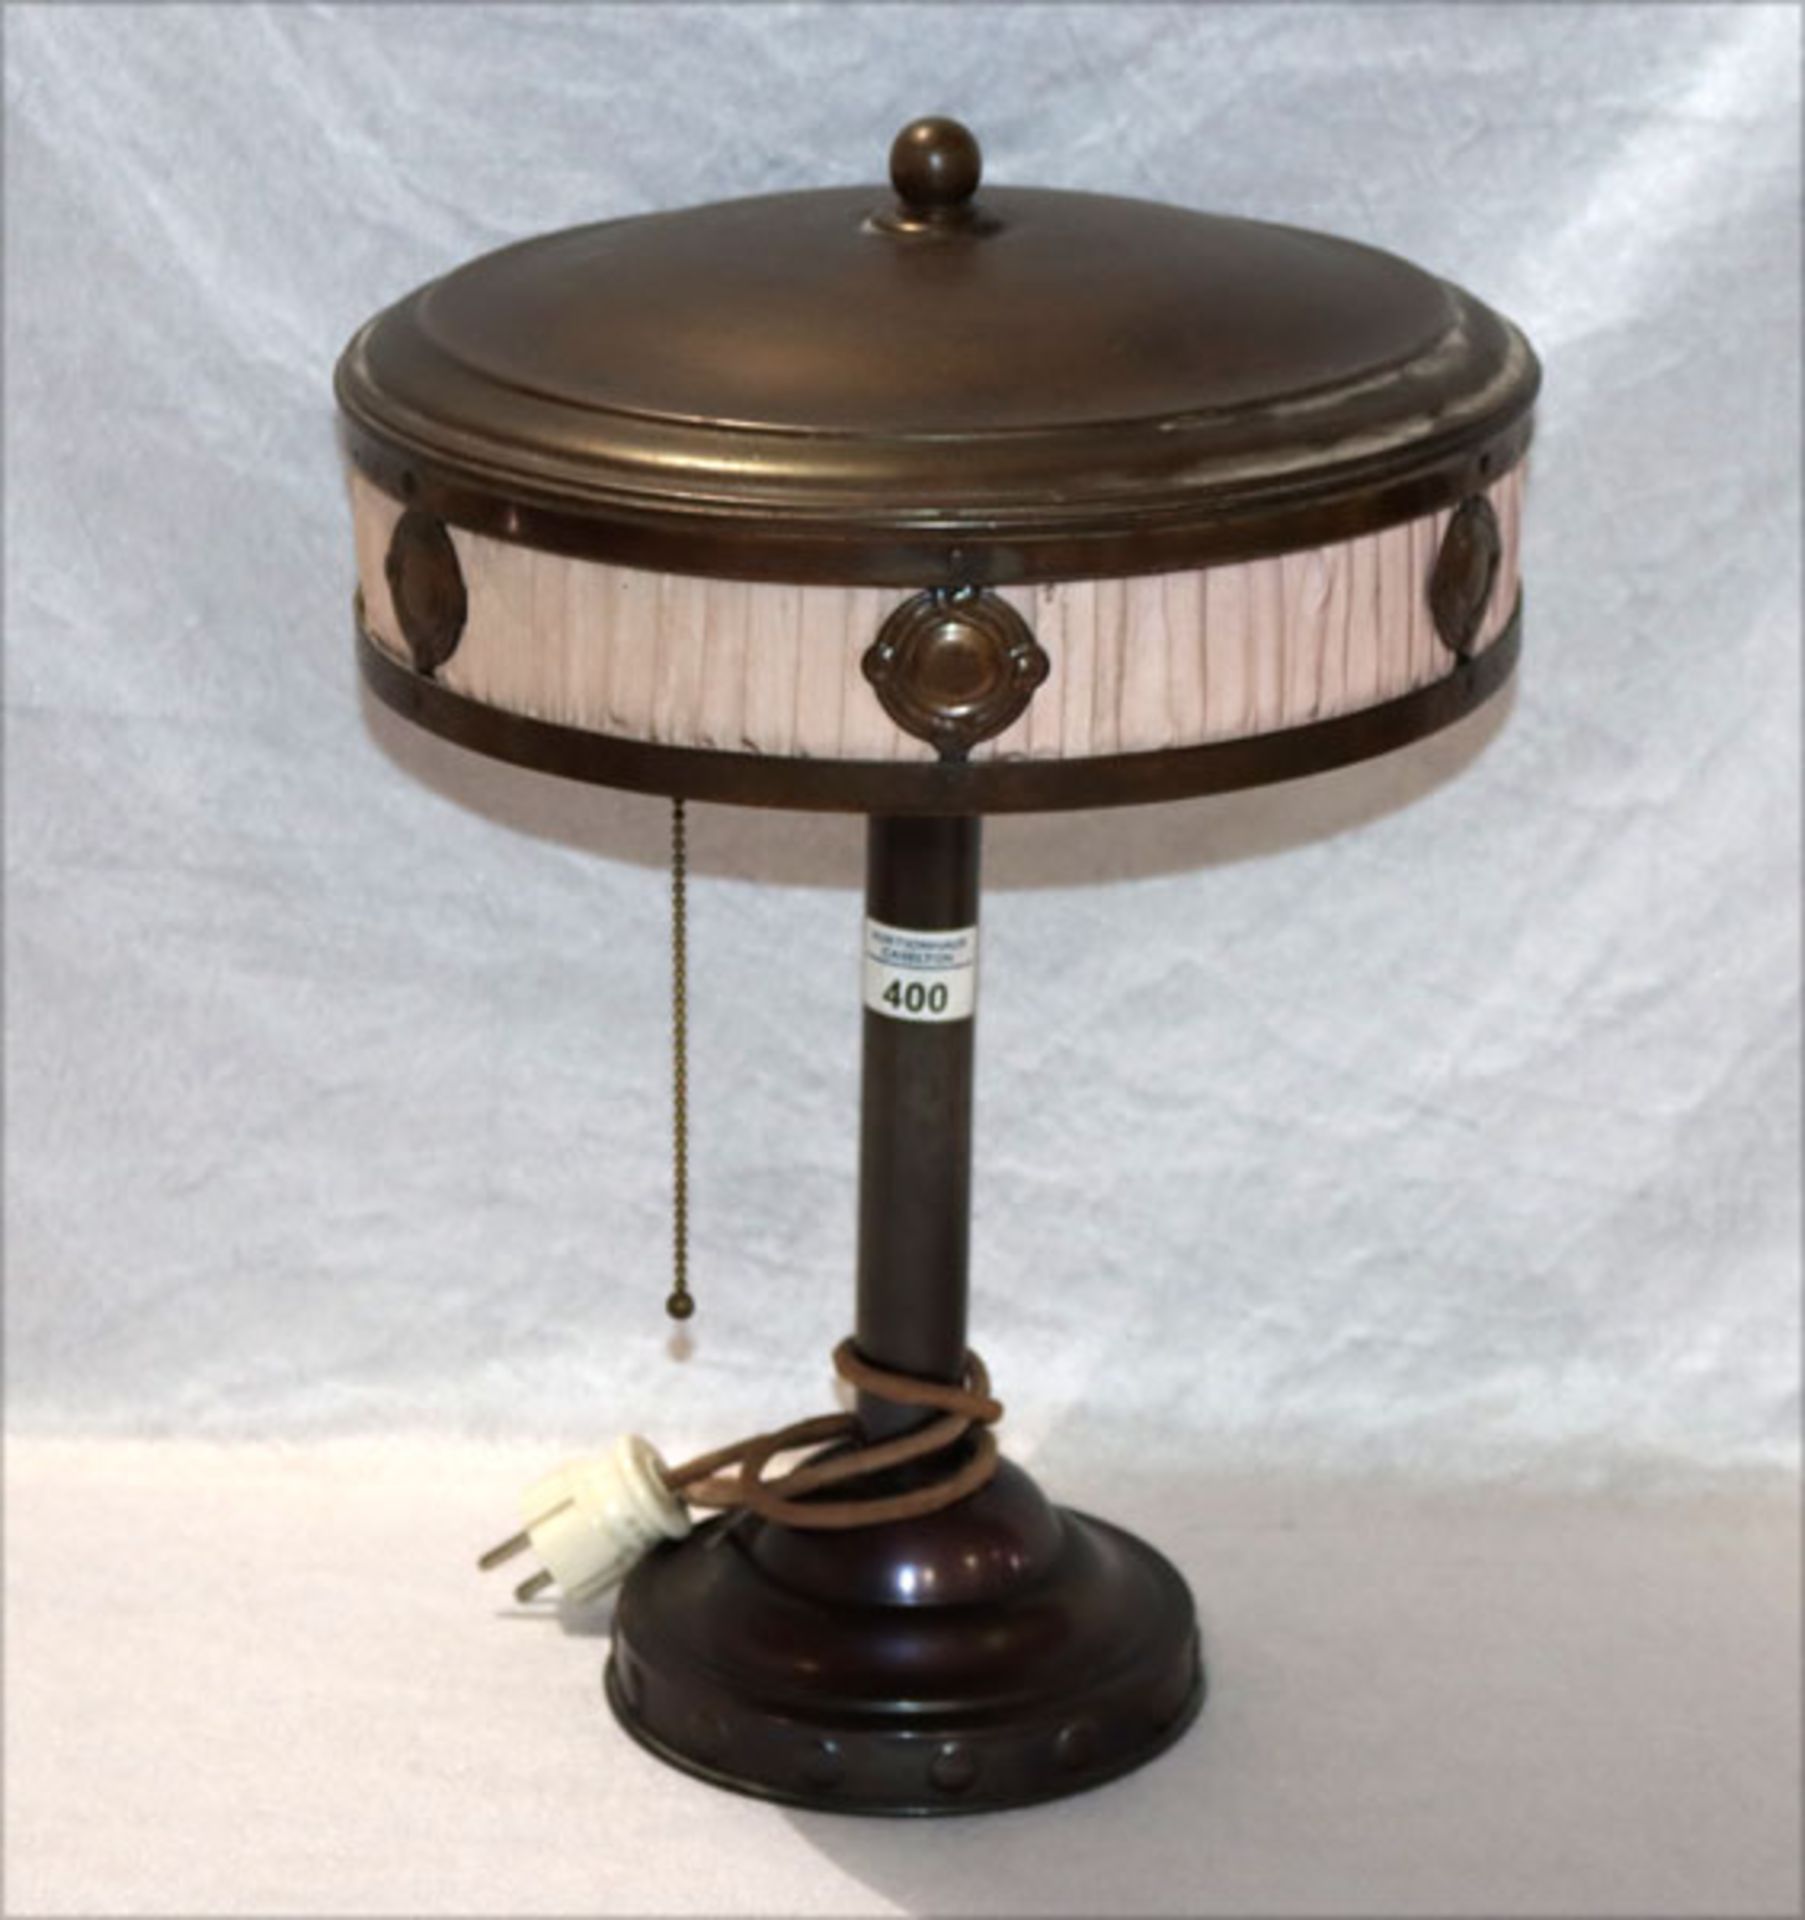 Tischlampe um 1900, Metall mit Stoffverzierung, H 43 cm, D 31 cm, Altersspuren, Funktion nicht